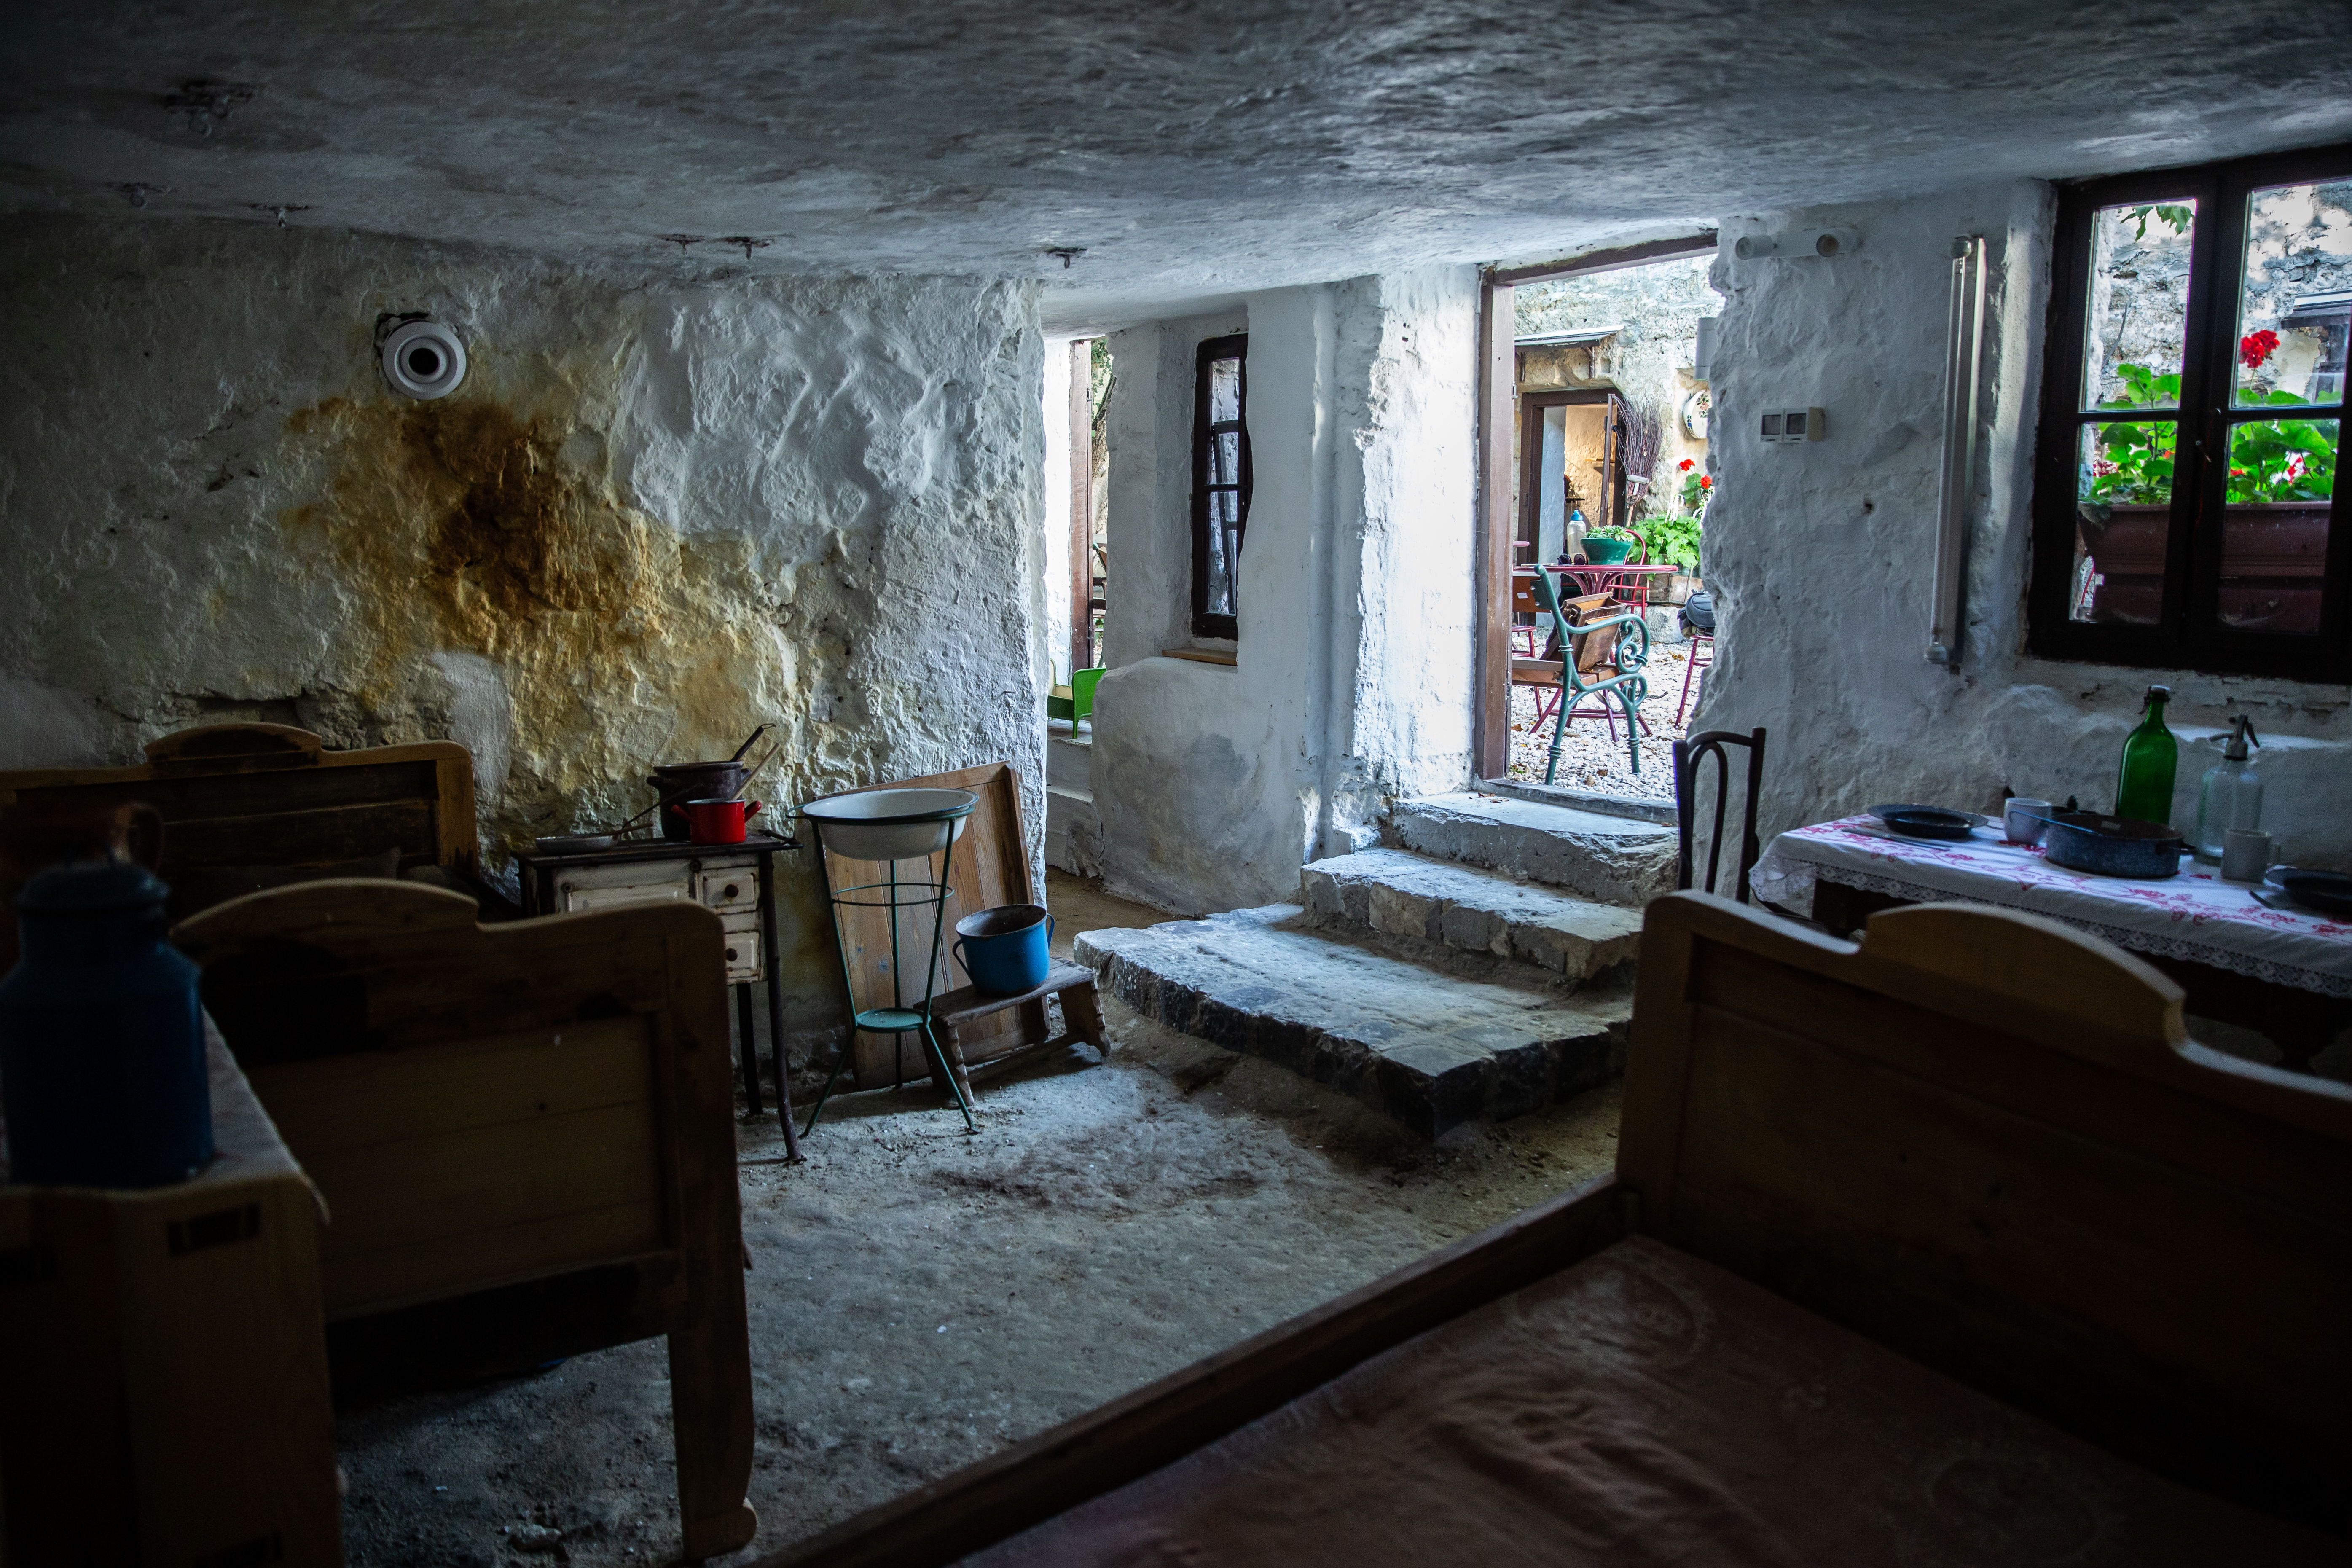 Nyomorúságos föld alatti hajlékok vagy a város első ökoházai? – ellátogattunk a budafoki Barlanglakás Emlékmúzeumba